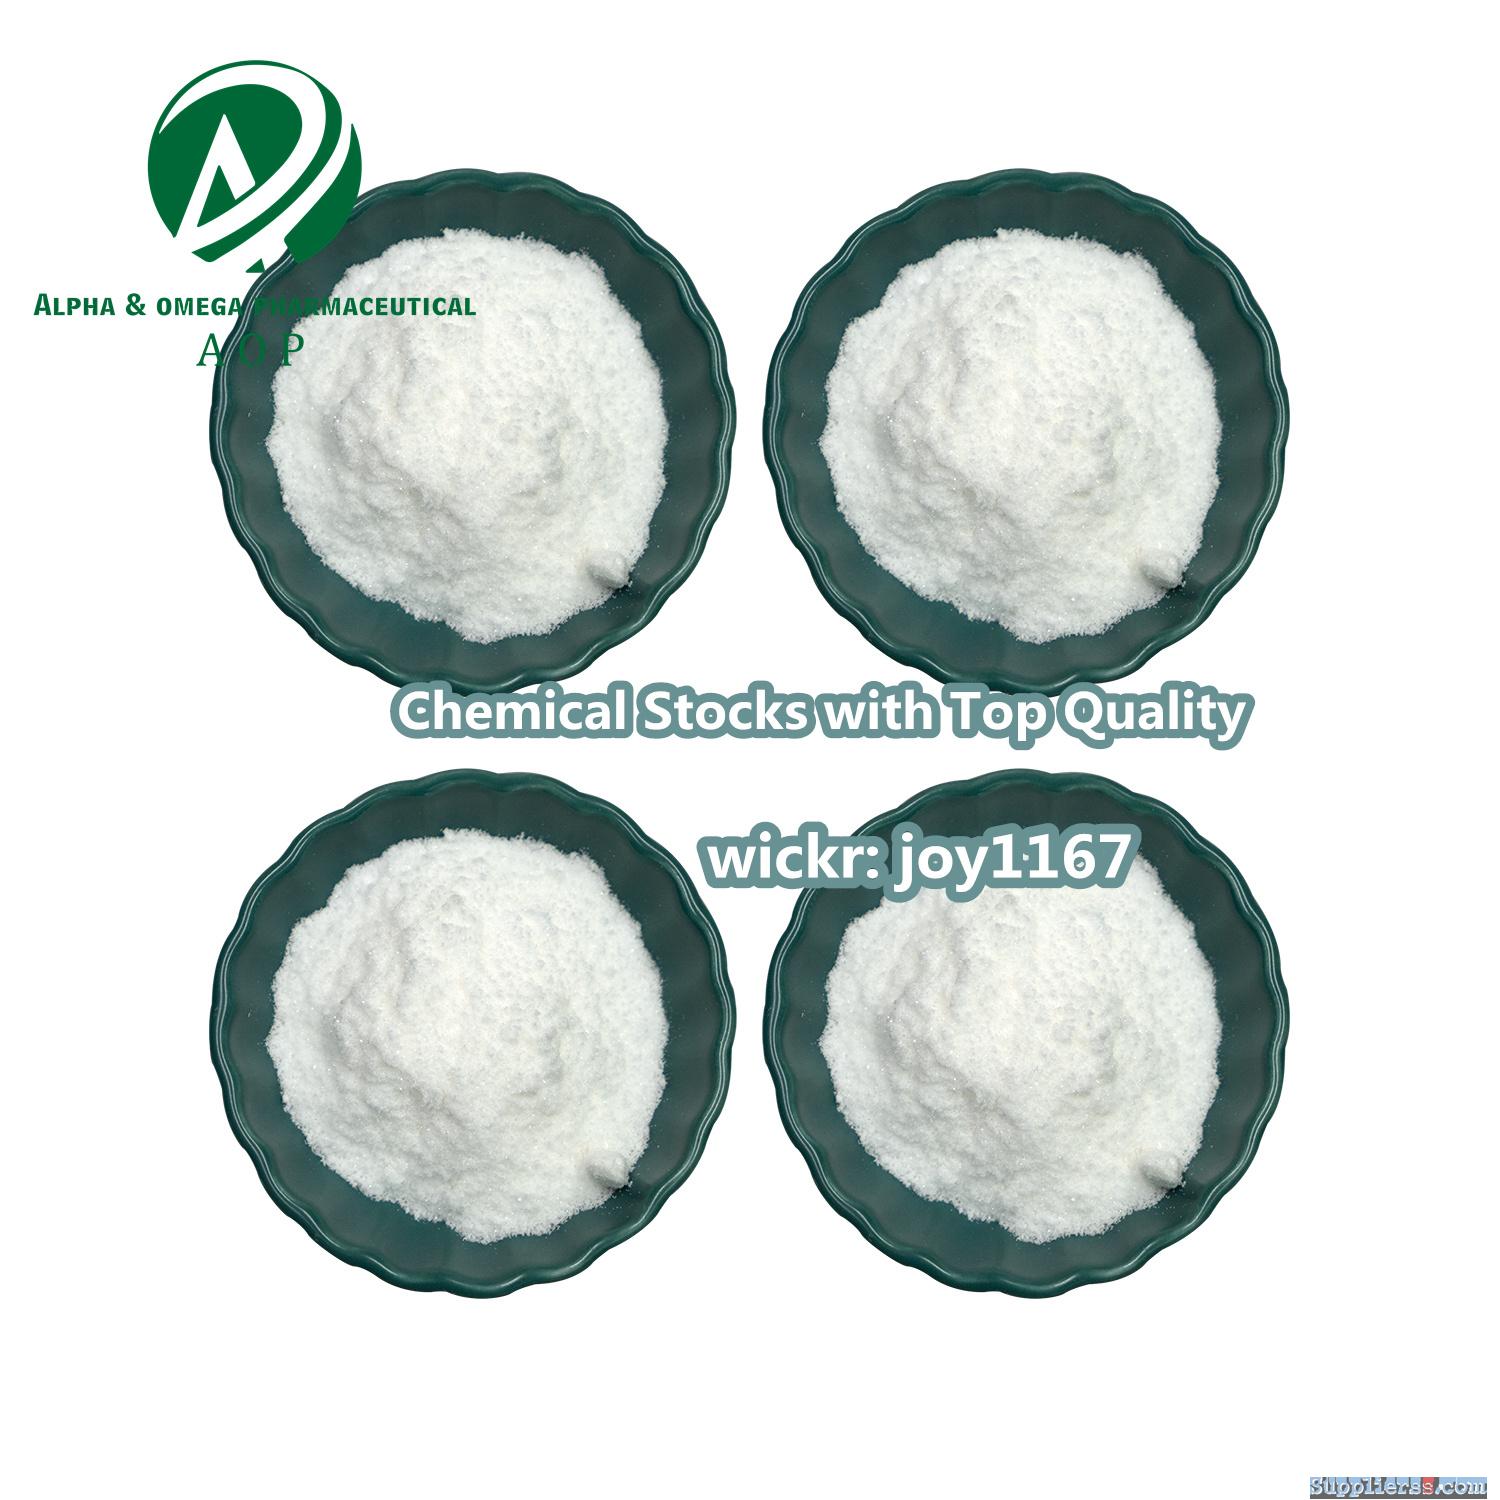 99% Purity CAS 593-81-7 Trimethylamine hydrochloride